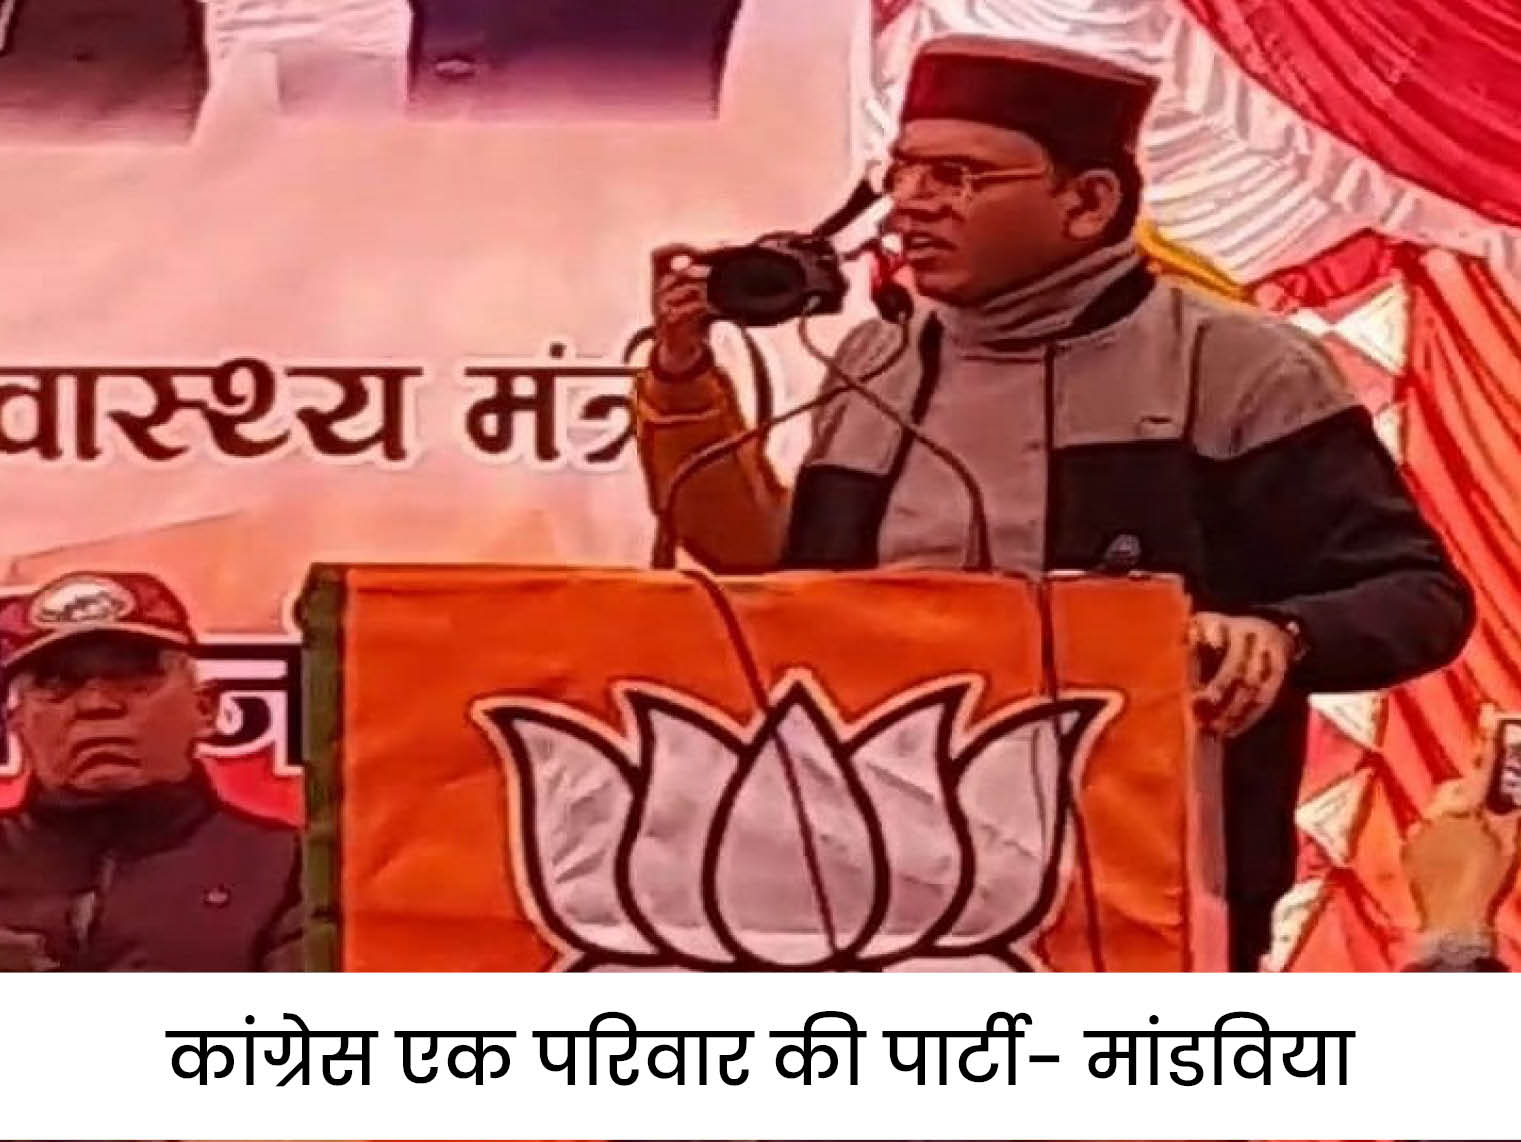 केंद्रीय कैबिनेट मंत्री मनसुख मांडविया का हिमाचल दौरा:पार्टी कार्यकर्ताओं को दिया जीत का मंत्र, कांग्रेस पर निशाना साधा, बोले- चुनिंदा लोगों की पार्टी